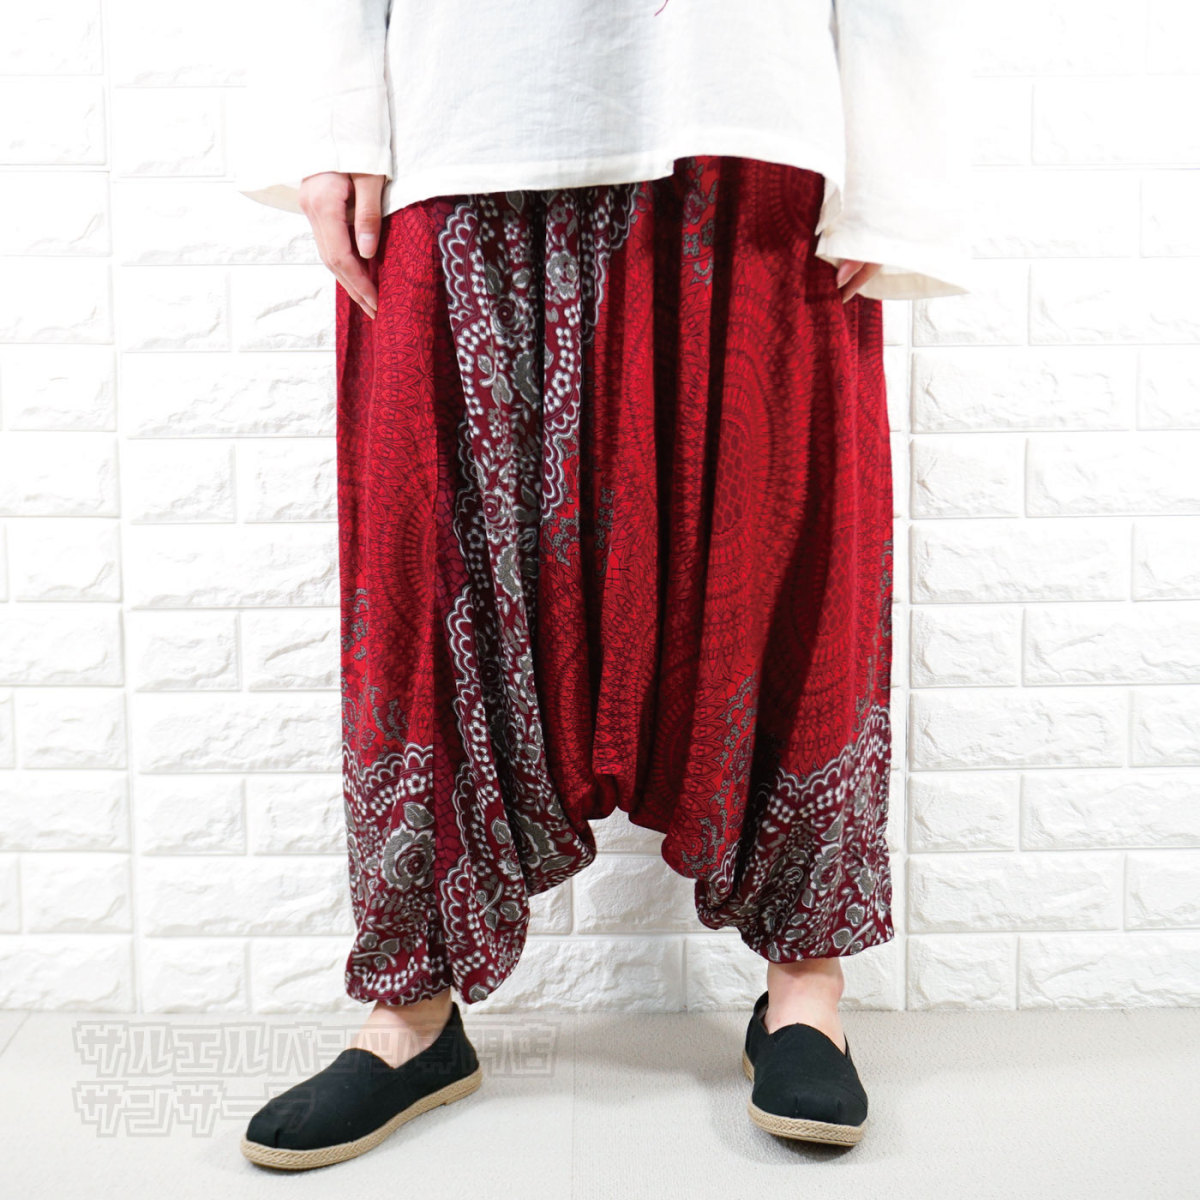  шаровары olientaru брюки Aladdin брюки женский искусственный шелк легкий брюки Thai брюки этнический мода весна лето осень раса 